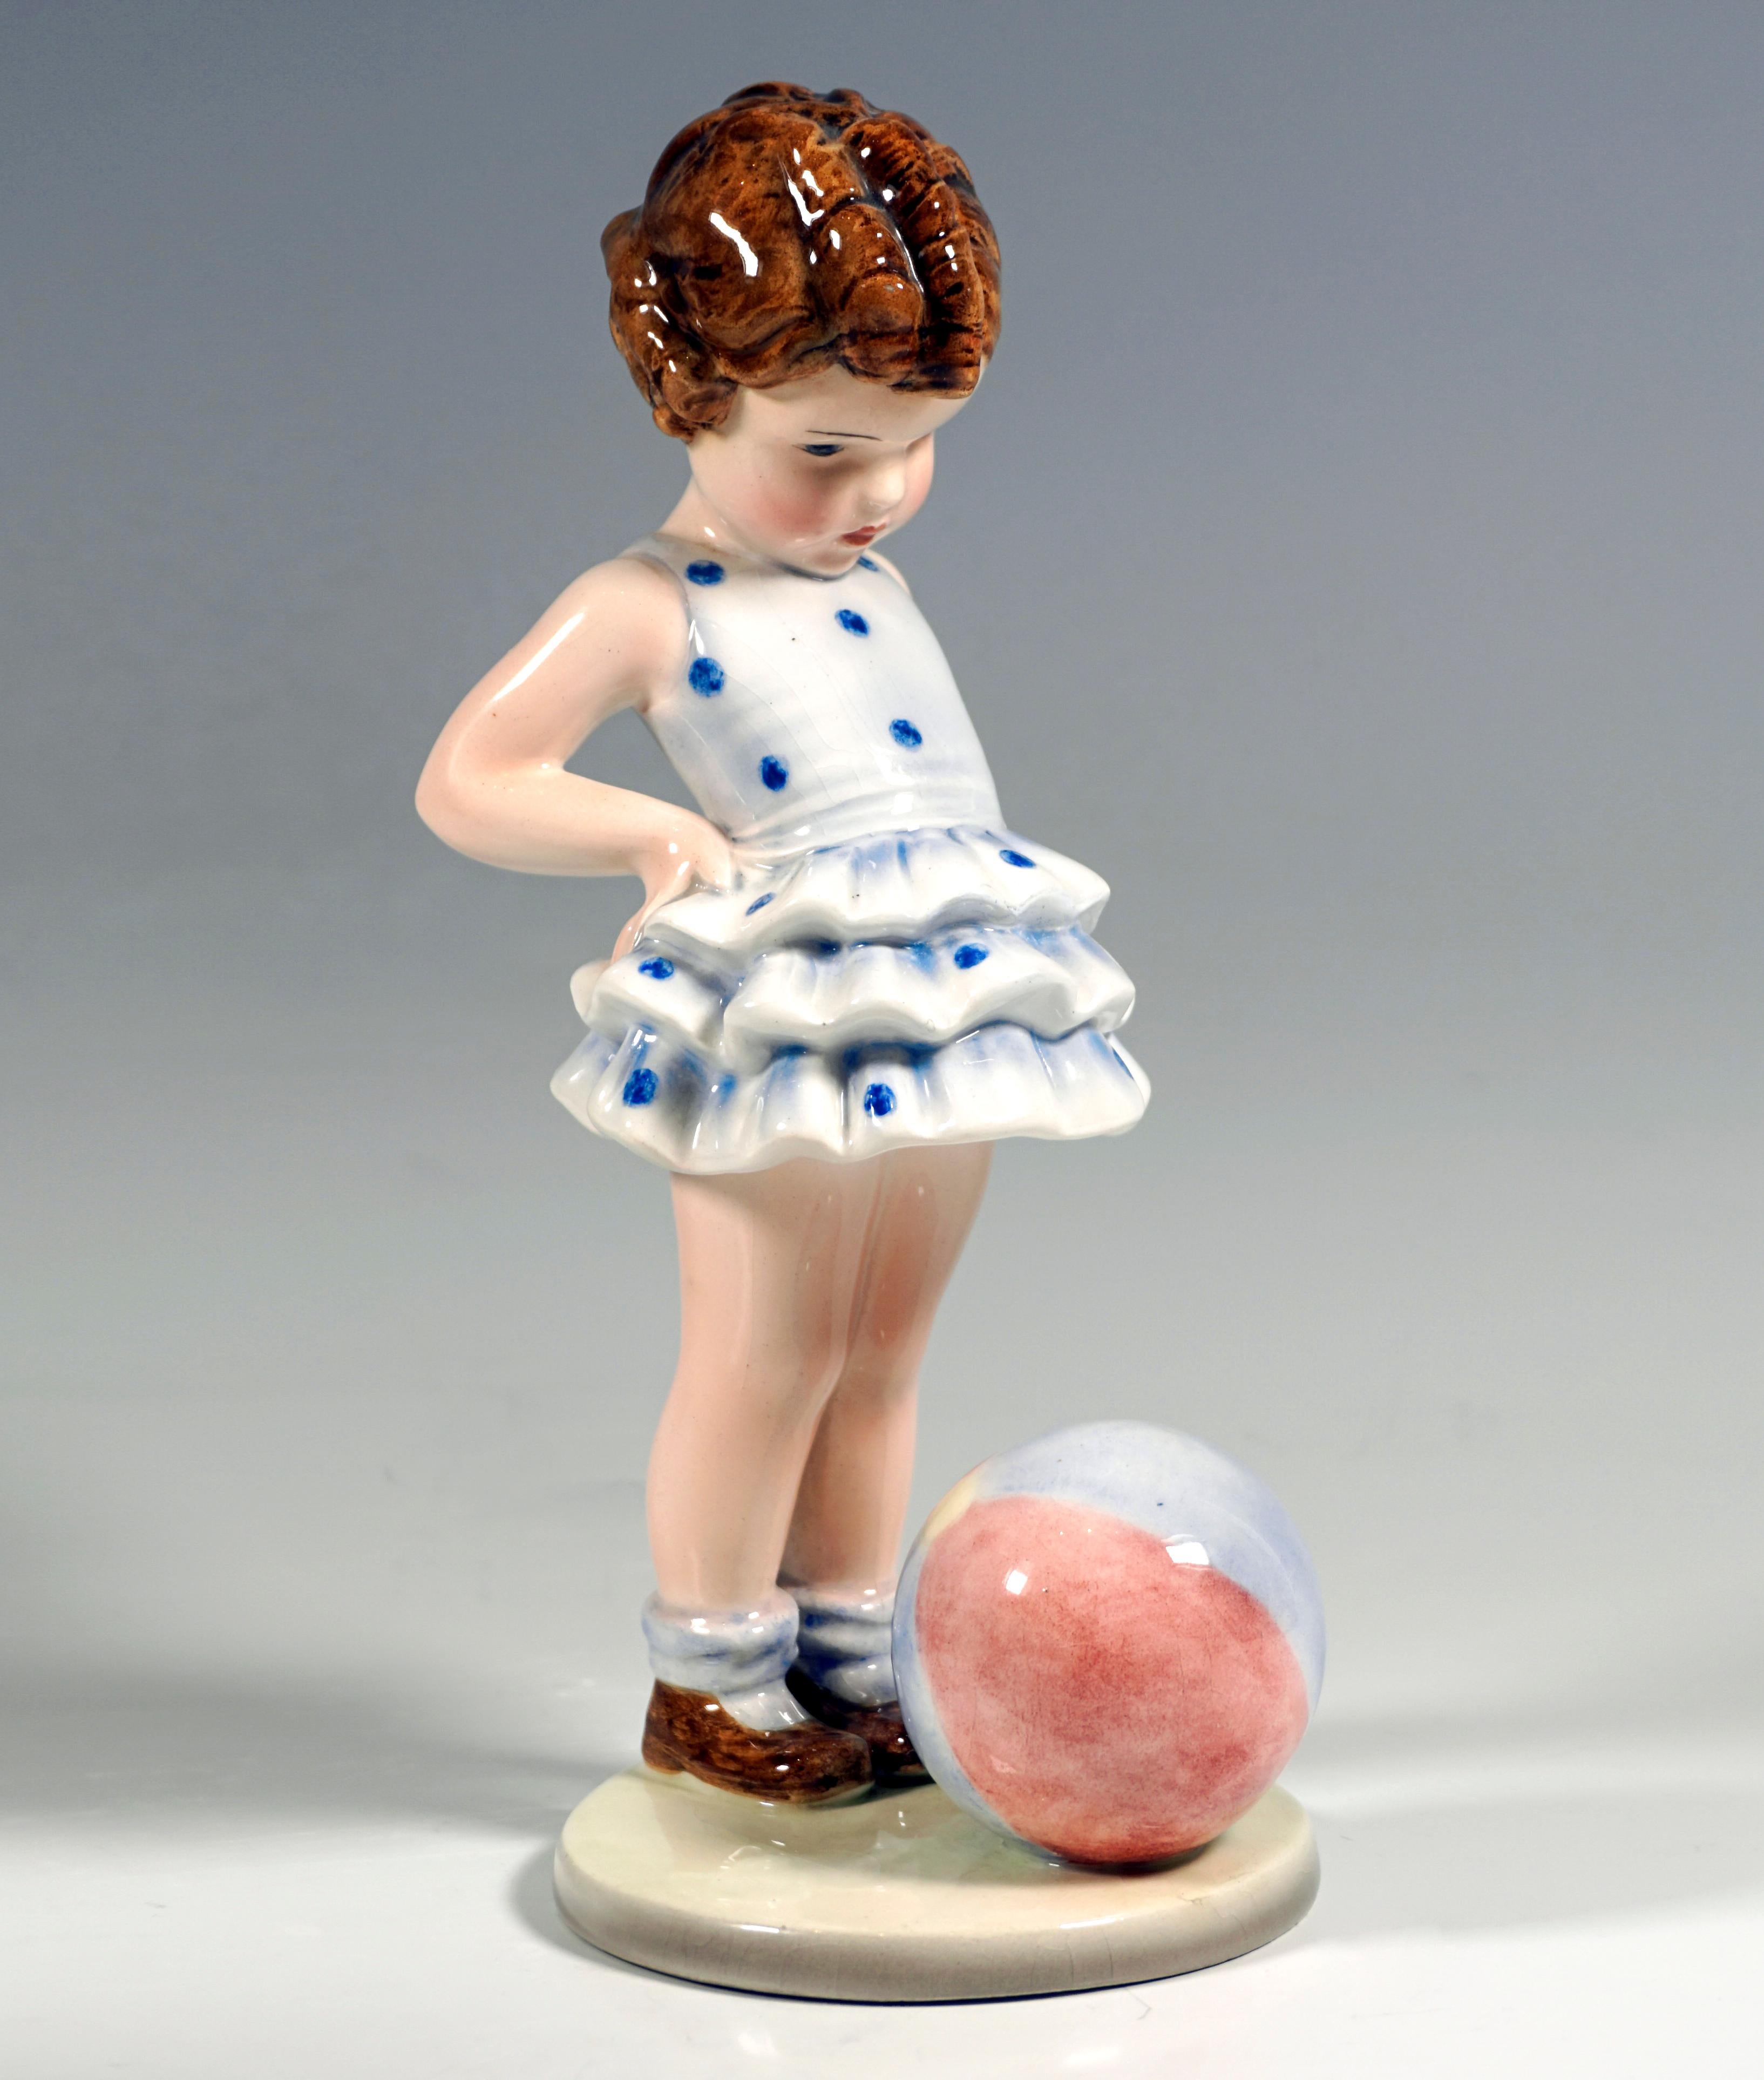 Petite fille bouclée dans une robe bleue à pois, les mains sur les hanches et regardant un ballon devant elle.
Sur une base ronde et plate de couleur beige.

Designer :
GERMAINE BOURET (1907 - 1953)
Dessinateur, caricaturiste, s'est fait